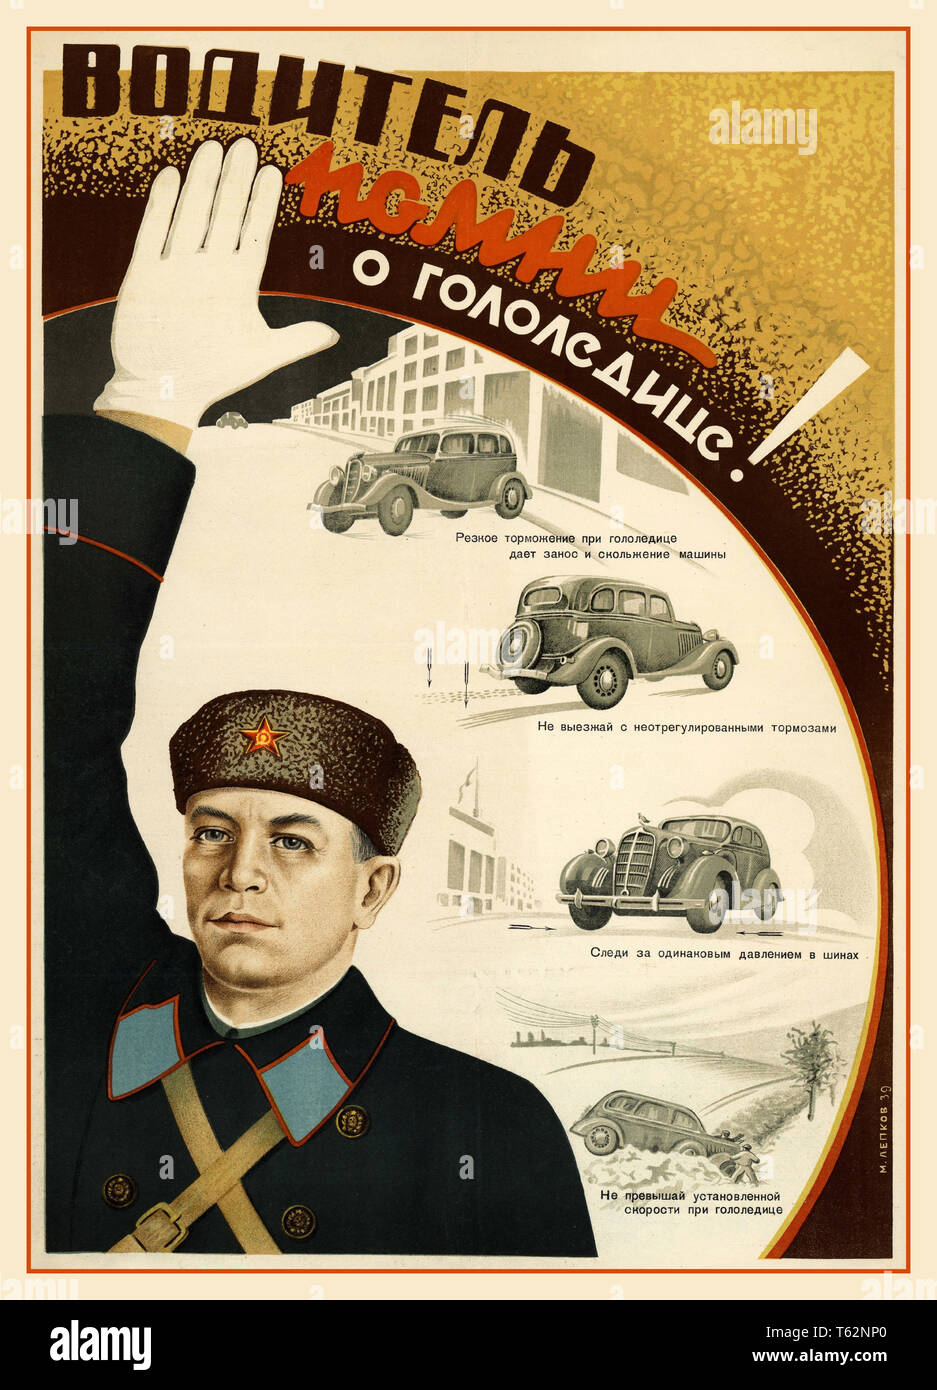 La propagande soviétique russe Vintage poster d'information "Driver ! Se souvenir à propos de la glace' Moscou 1939 Lithographie couleur Banque D'Images